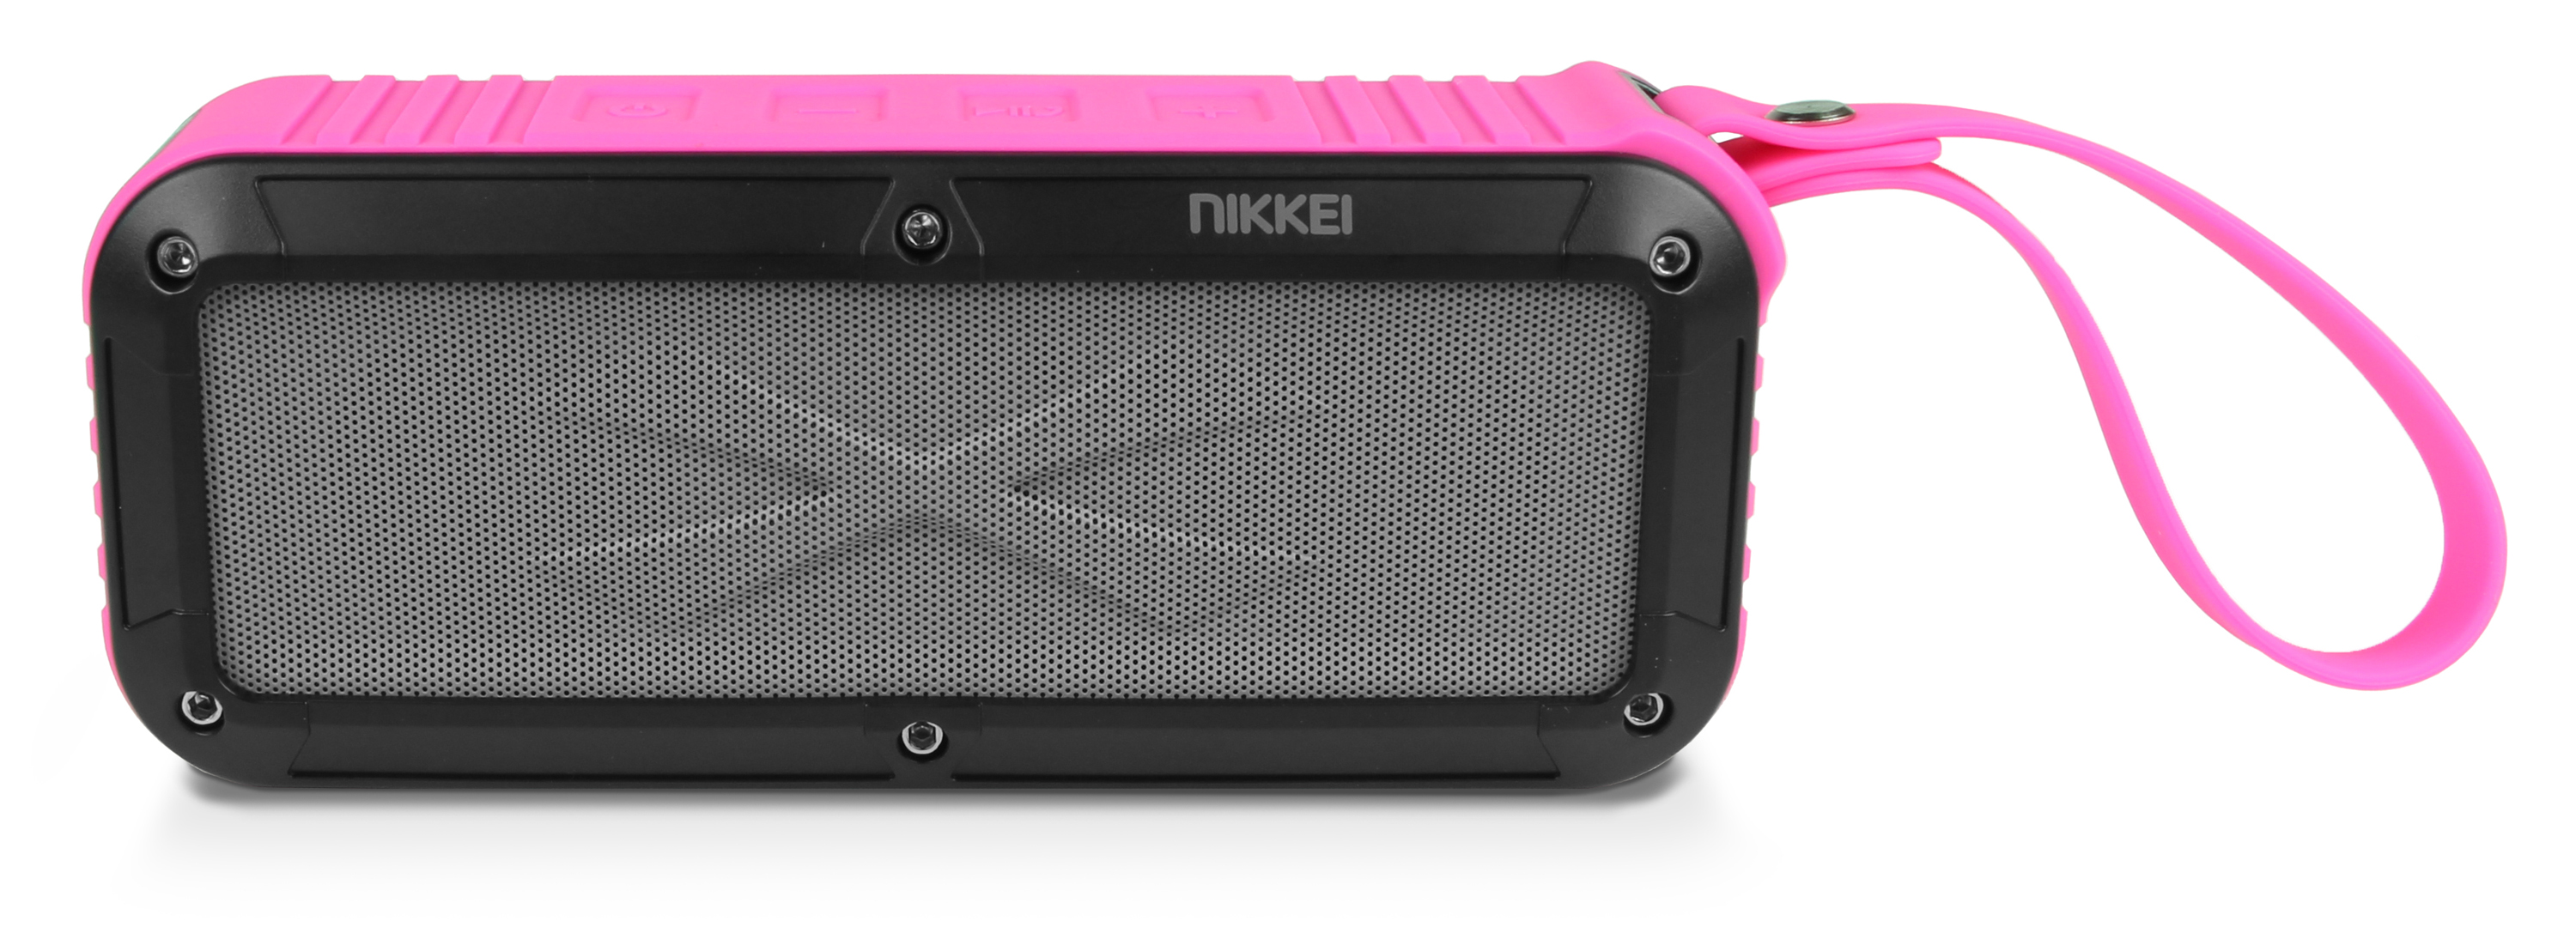 Nikkei BOXX3PK Waterproof BT Speaker 2x3W pink